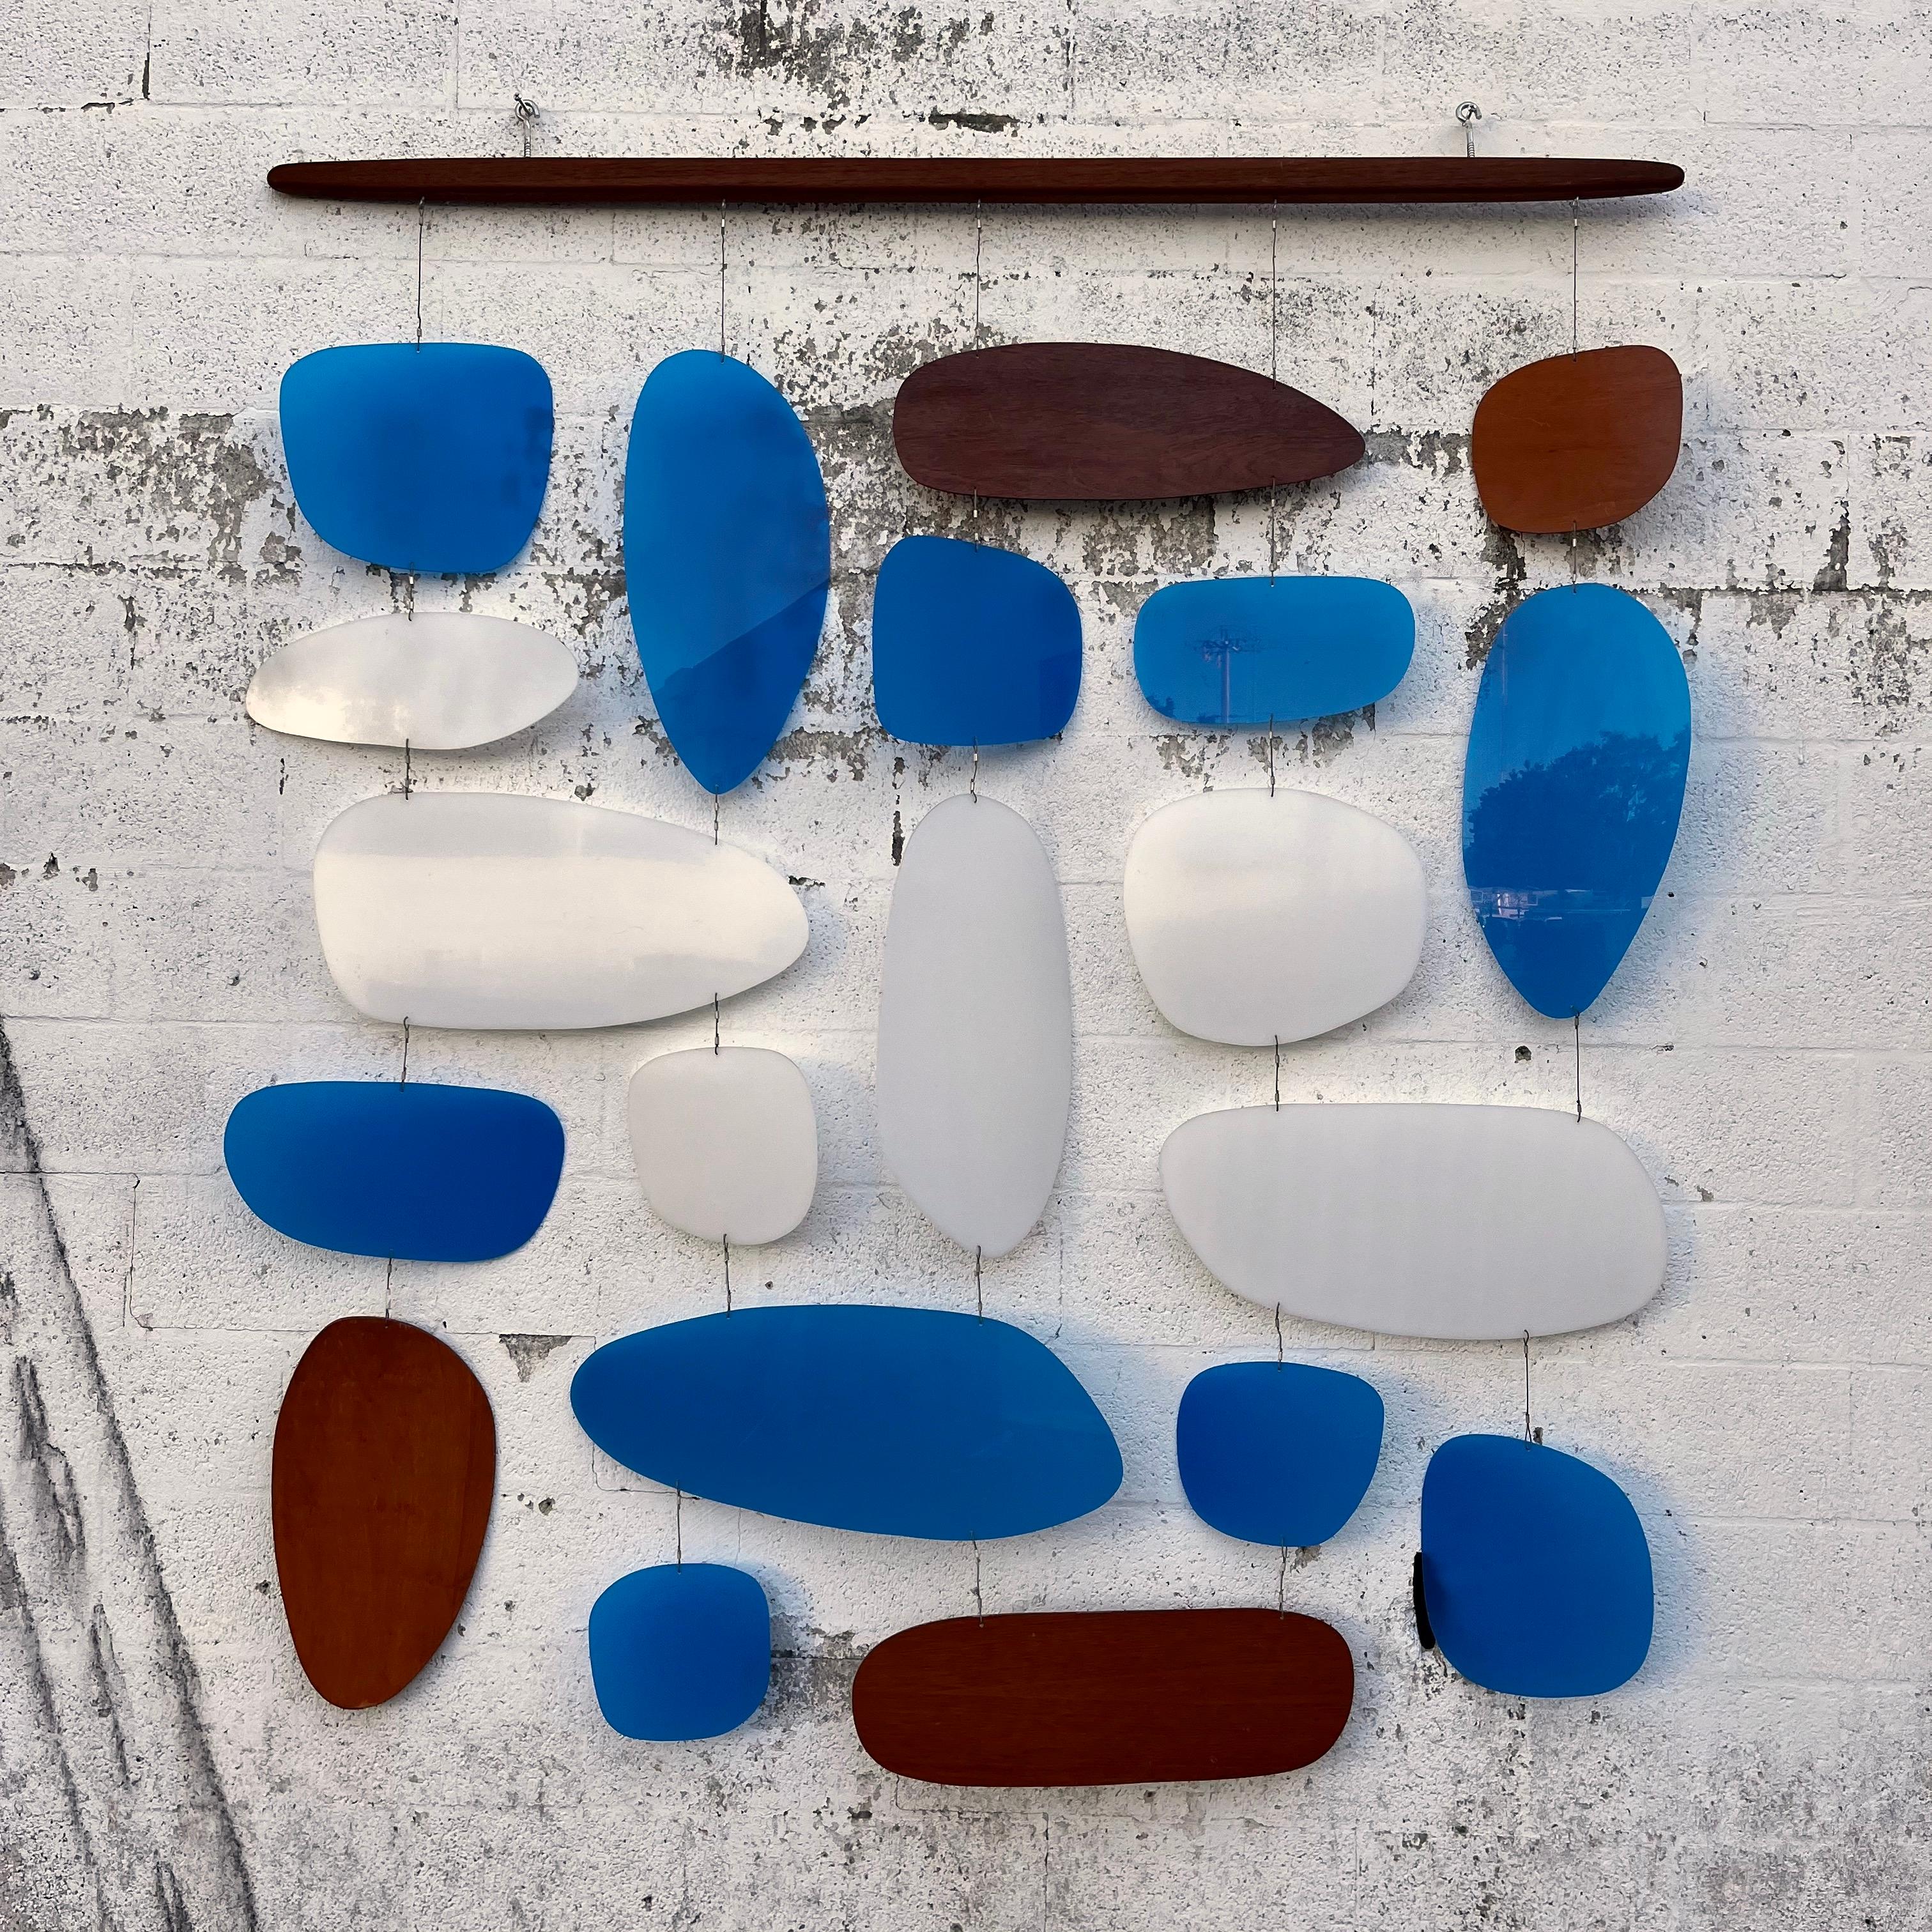 Vintage 1960s Modernist Inspired Handcrafted Hanging Wall Sculpture / Room Divider by New Zealand Artist Andrew Reid. Ca. 1990er Jahre.
Eine Kombination geometrischer Formen mit abgerundeten Kanten, handgeschnitten aus transparentem Acryl und